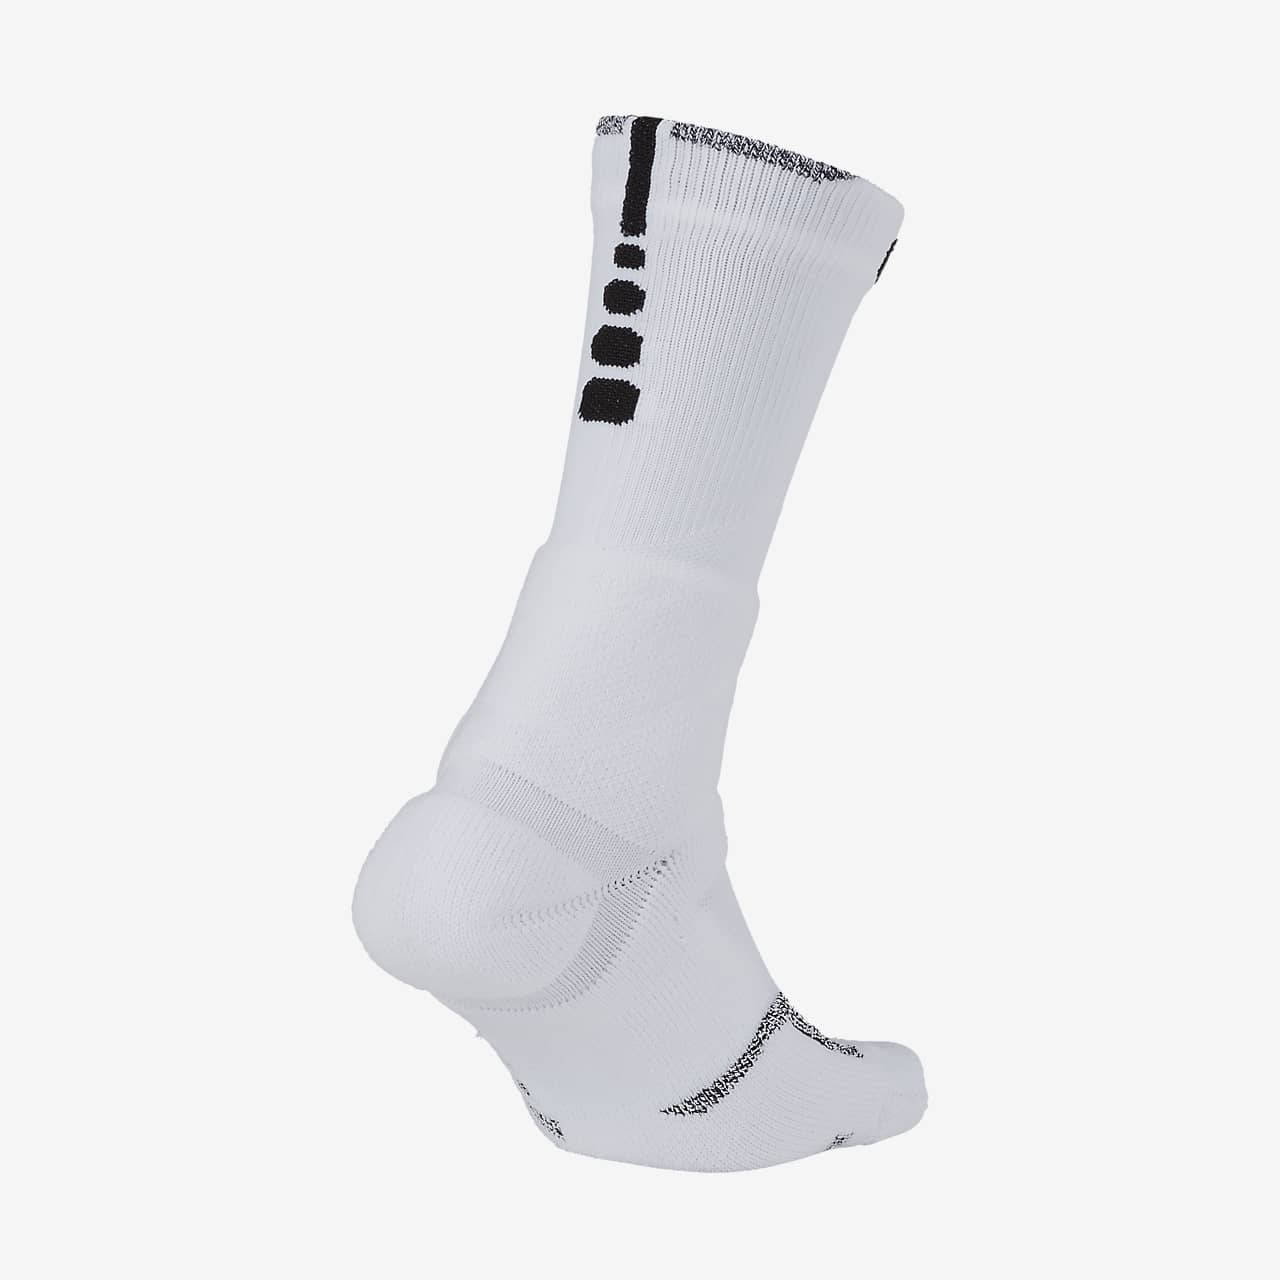 nba power grip socks